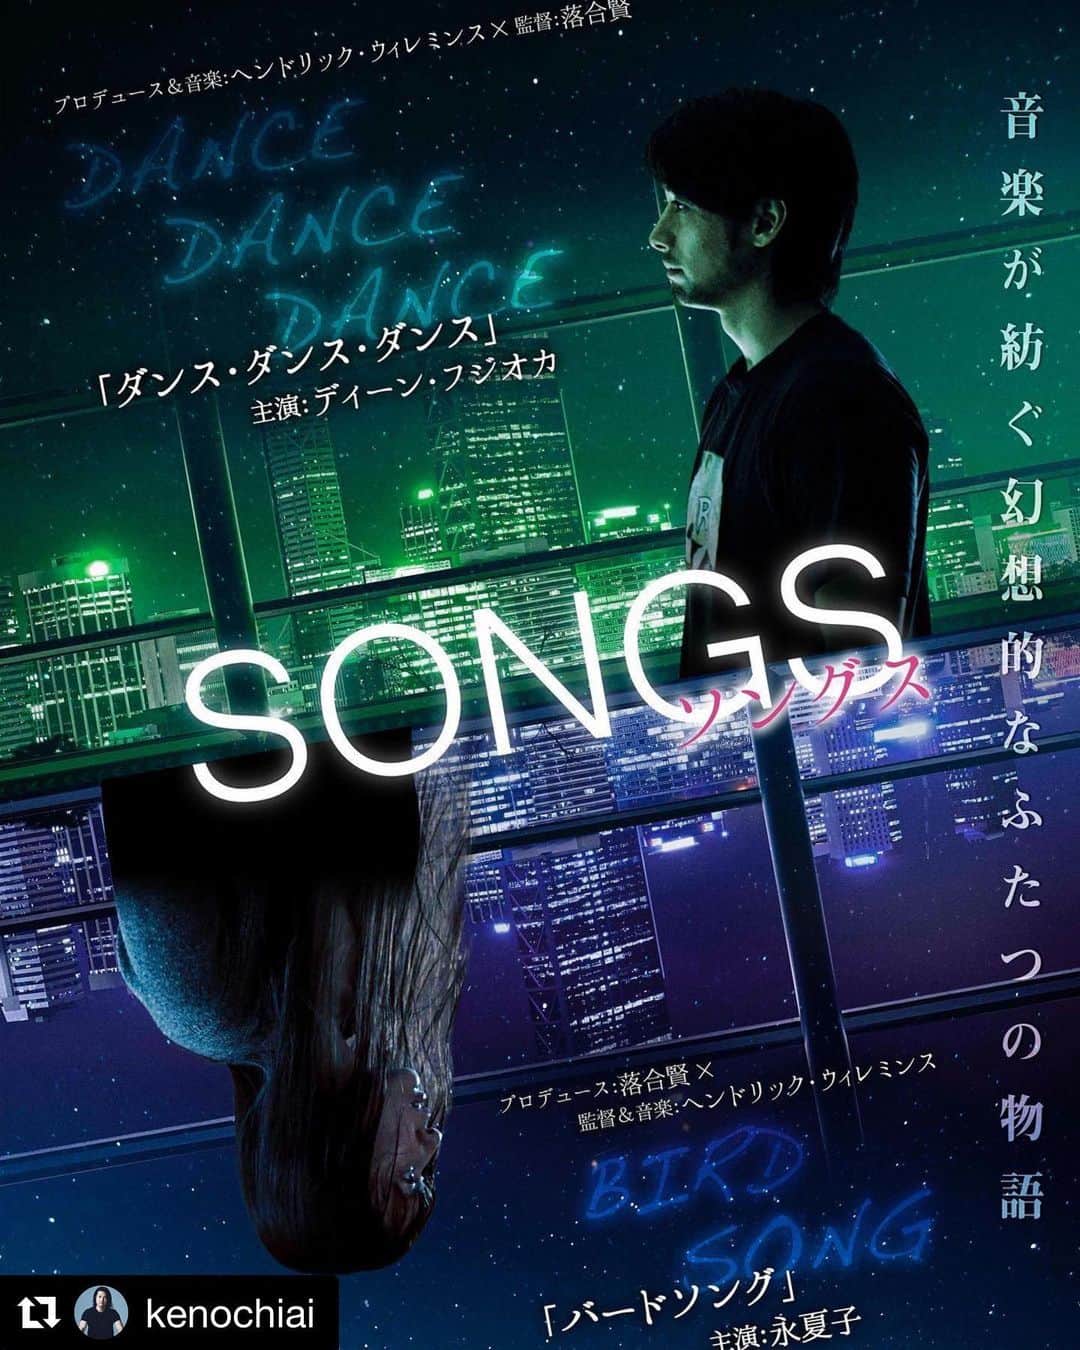 小林夏子のインスタグラム：「主演作『BIRD SONG』についてのお知らせ☺︎* 落合賢監督の投稿をリポストさせていただきます。 最後のハッシュタグも気になるところ…！  #Repost @kenochiai with @get_repost ・・・ Finally, a compilation DVD “Songs” (“Dance Dance Dance” & “Birdsong”) will be released on DVD on April 1st.  お待たせしました、ついに「ダンスダンスダンス」と「バードソング」が円盤化します。ヘンドリック・ウィレミンスとの共同作の２作が一つのDVD「SONGS(ソングス）」となり、発売はエイプリルフールデーの４月１日！各ビデオストアでの購入やレンタル、またアマゾンなどのネットでもご購入可能です。  下記、商品説明となります。  ☆「ダンスダンスダンス」 主演は「空飛ぶタイヤ」のディーン・フジオカ、「恋と嘘」の森川葵、「カーテンコール」の伊藤歩。  「太秦ライムライト」の落合賢監督がメガホンをとり、ベルギーの人気エレクトリックロックバンド「アーセナル」のヘンドリック・ウィレミンスが製作・脚本を手がけた音楽ファンタジー。  人気DJのFURUは、クラブで知り合ったダンサーのナツコを自宅のマンションに連れて帰る。その夜、彼は窓の外に浮かび上がる女性の亡霊を前に、自分が故郷を離れたことで失った代償について語り始める。  ☆「バードソング」 主演は「スティルライフオブメモリーズ」の永夏子。麿赤兒、金山一彦、松林慎司、須賀貴匡、原扶貴子などが共演。  ベルギーの人気ロックバンド「アーセナル」のヘンドリック・ウィレミンスが監督・脚本、「太秦ライムライト」の落合賢監督が製作を手がけた音楽サスペンス。  ビル清掃の仕事をしながら先の見えない毎日を送る一児の母・飛鳥は、偶然のスカウトをきっかけに、幼い頃から夢見ていた歌手への道を歩み始める。人気オーディション番組への出演を果たす飛鳥だったが、彼女の歌った曲が自殺した音楽家・大友領の作品であるとされ、盗作のみならず殺人容疑までかけられてしまう。 　　 #ダンスダンスダンス #ディーンフジオカ フジオカ #伊藤歩 #森川葵 #バードソング #永夏子 #須賀貴匡 #麿赤児 #松林慎司 #原扶貴子 #金山一彦 #桜木梨奈 #HendrikWillemyns #落合賢　 #ついに円盤化　#配信や放映も」